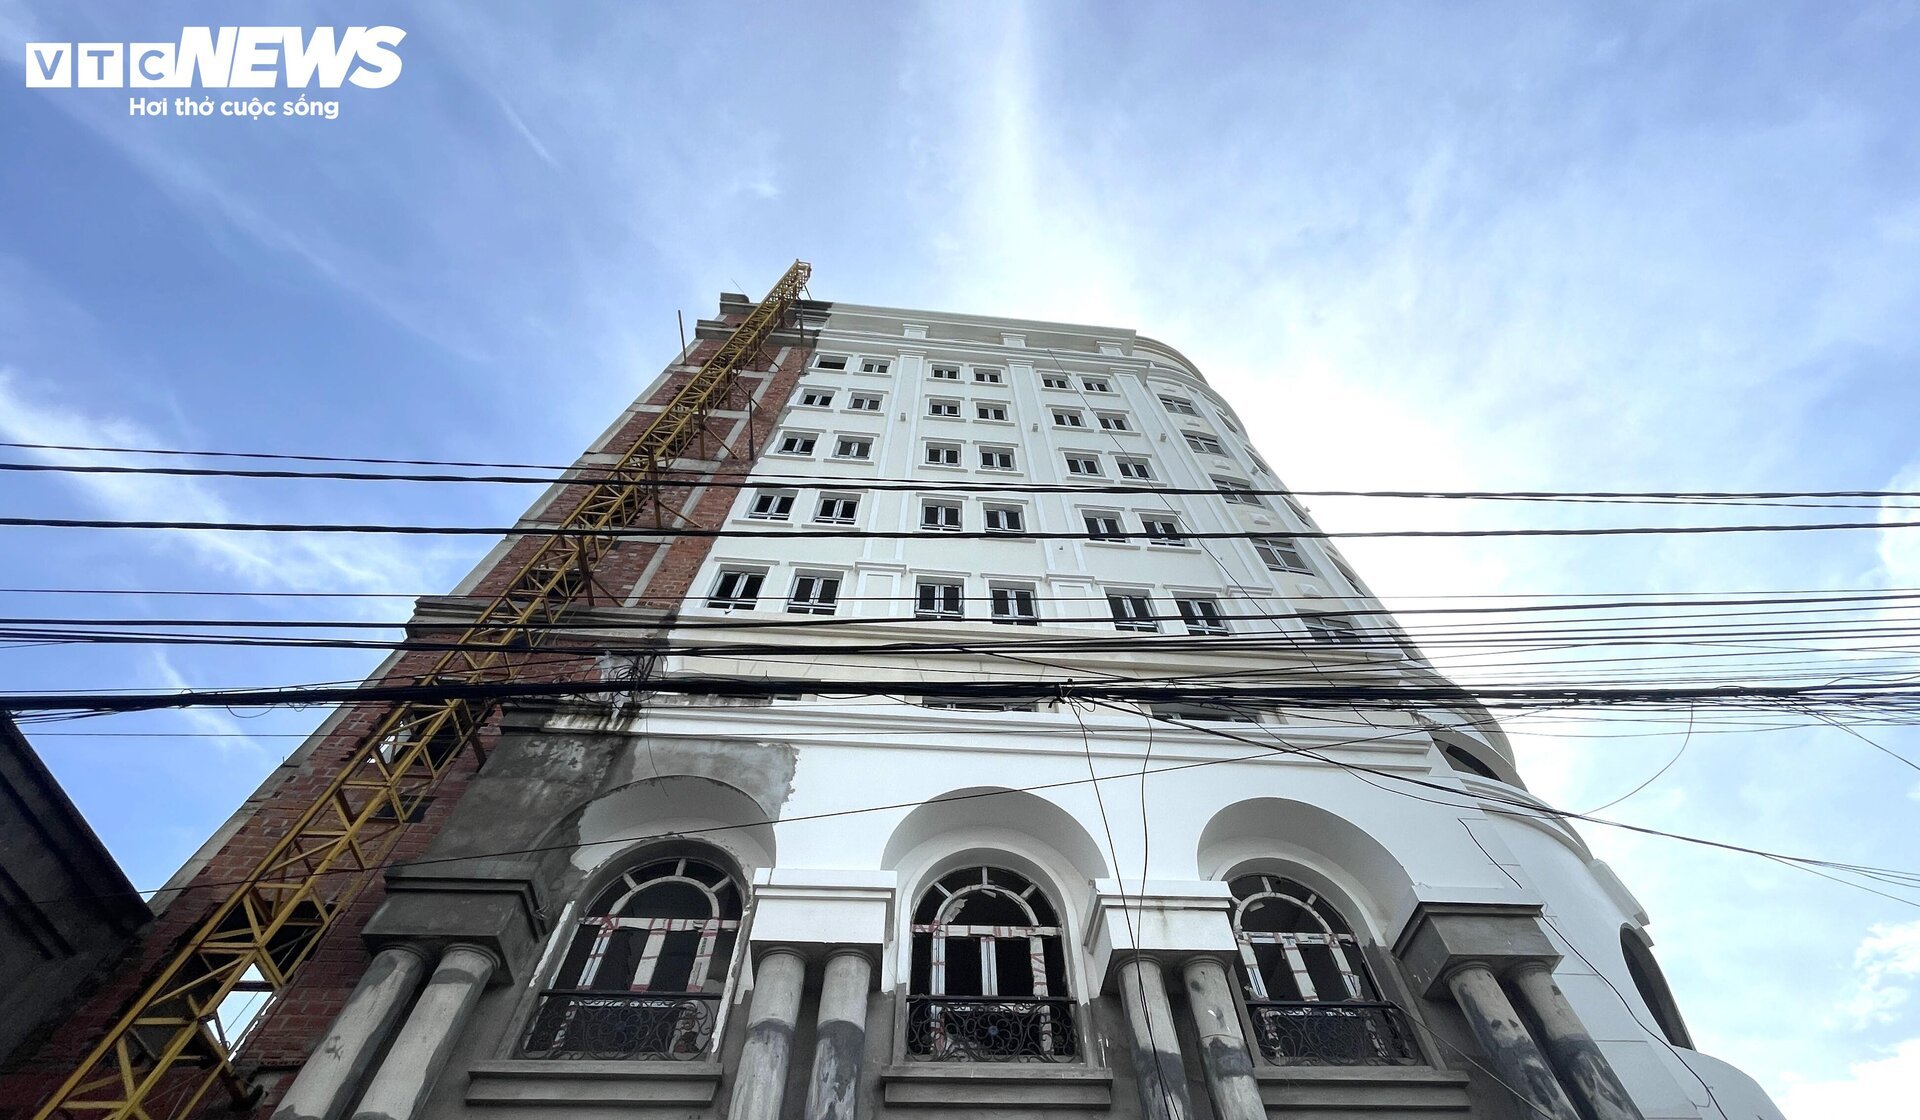 Tòa nhà trăm tỷ, xây gần 10 năm chưa xong của nữ giám đốc vừa bị bắt ở Bình Định - Ảnh 2.